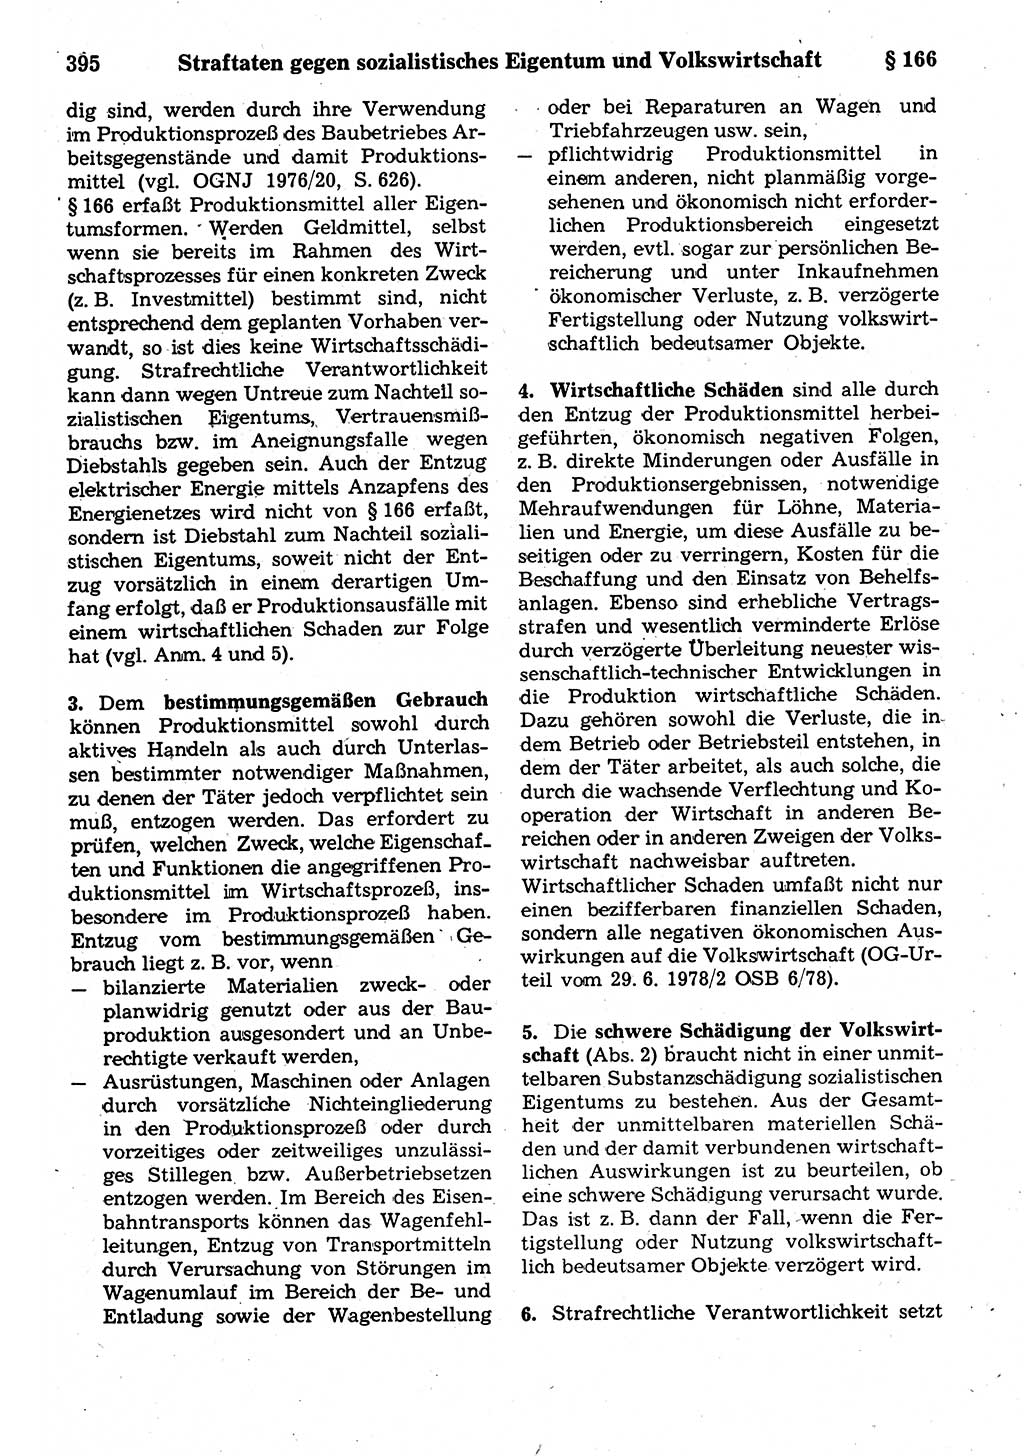 Strafrecht der Deutschen Demokratischen Republik (DDR), Kommentar zum Strafgesetzbuch (StGB) 1987, Seite 395 (Strafr. DDR Komm. StGB 1987, S. 395)